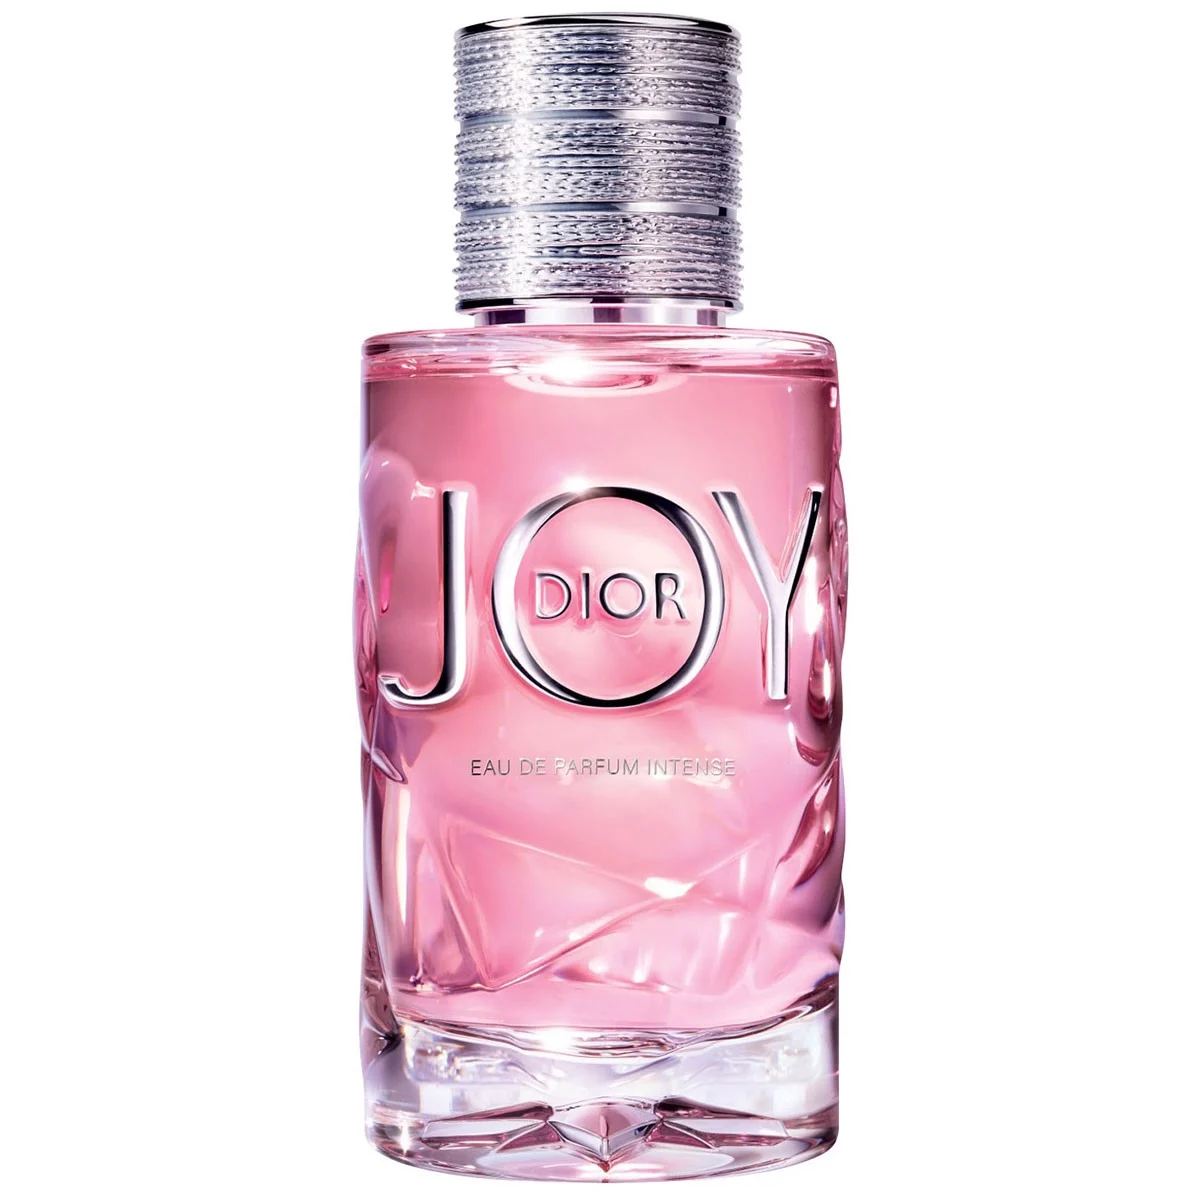 Cập nhật 82+ về dior eau de parfum intense hay nhất